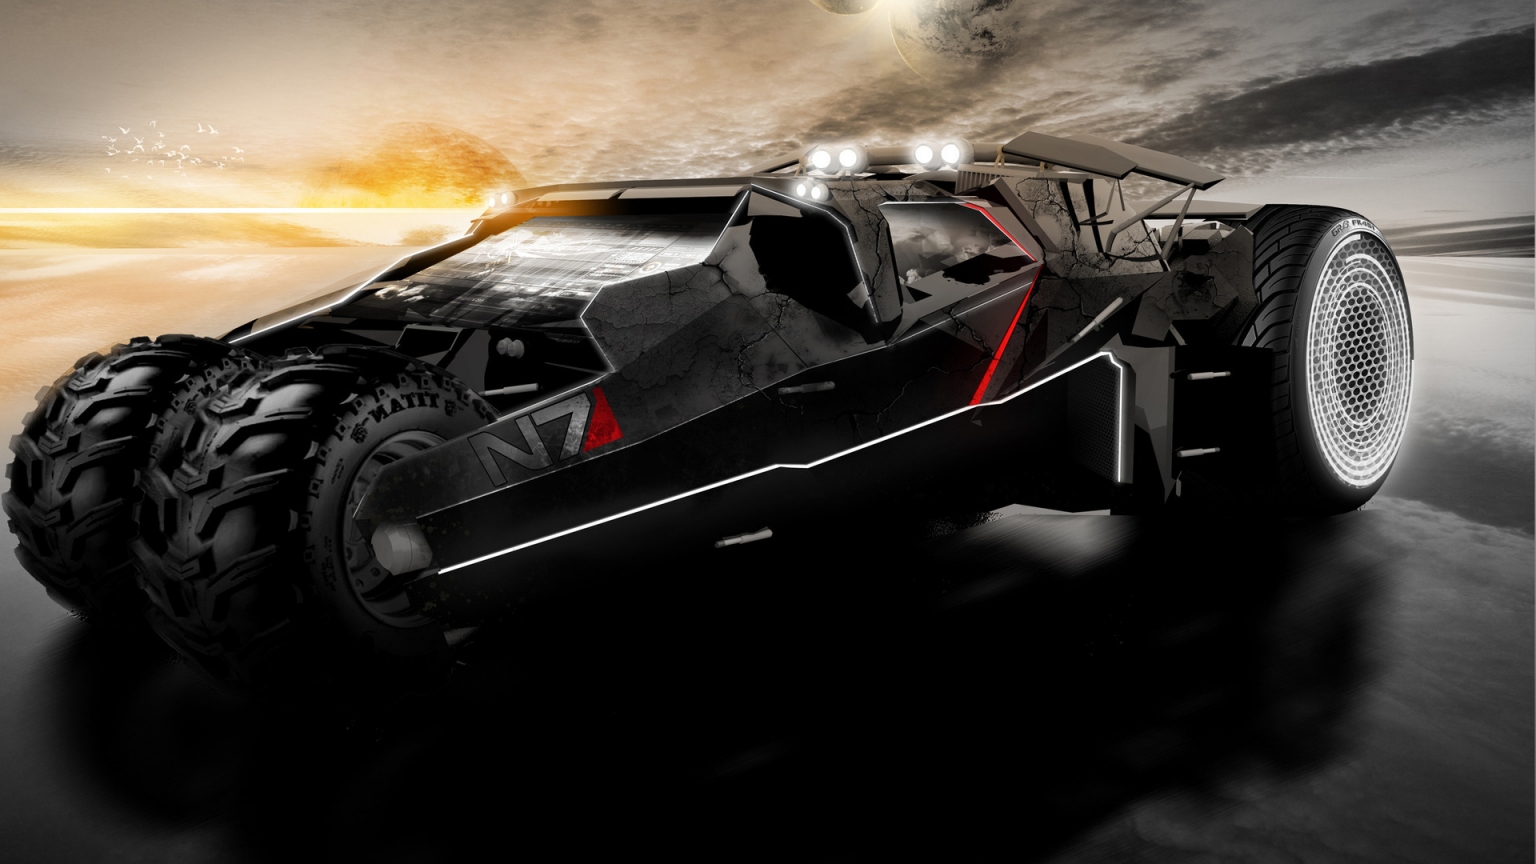 Mass Effect 2 Car for 1536 x 864 HDTV resolution